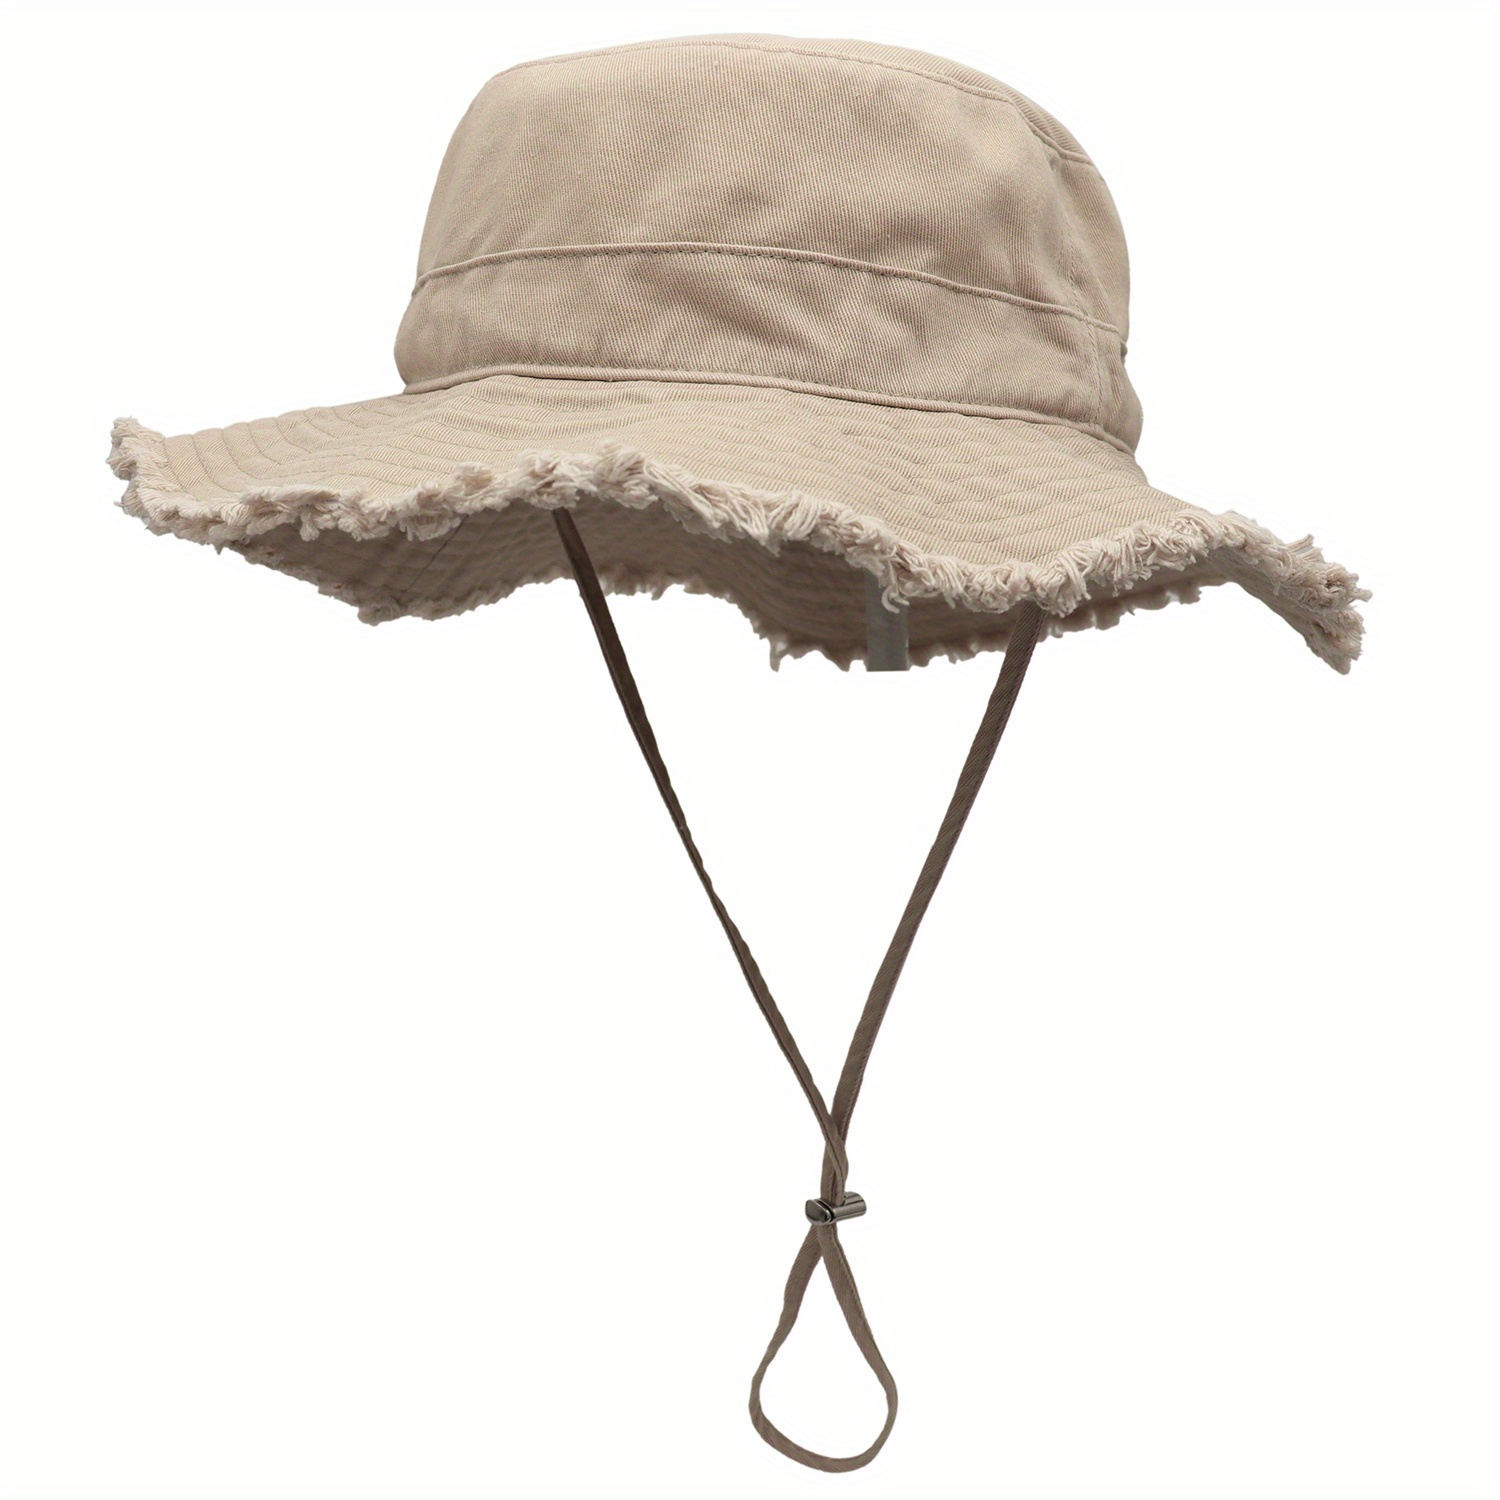 Large Brim Sun Hat,Fishing Hat Breathable Cotton Sun Hat